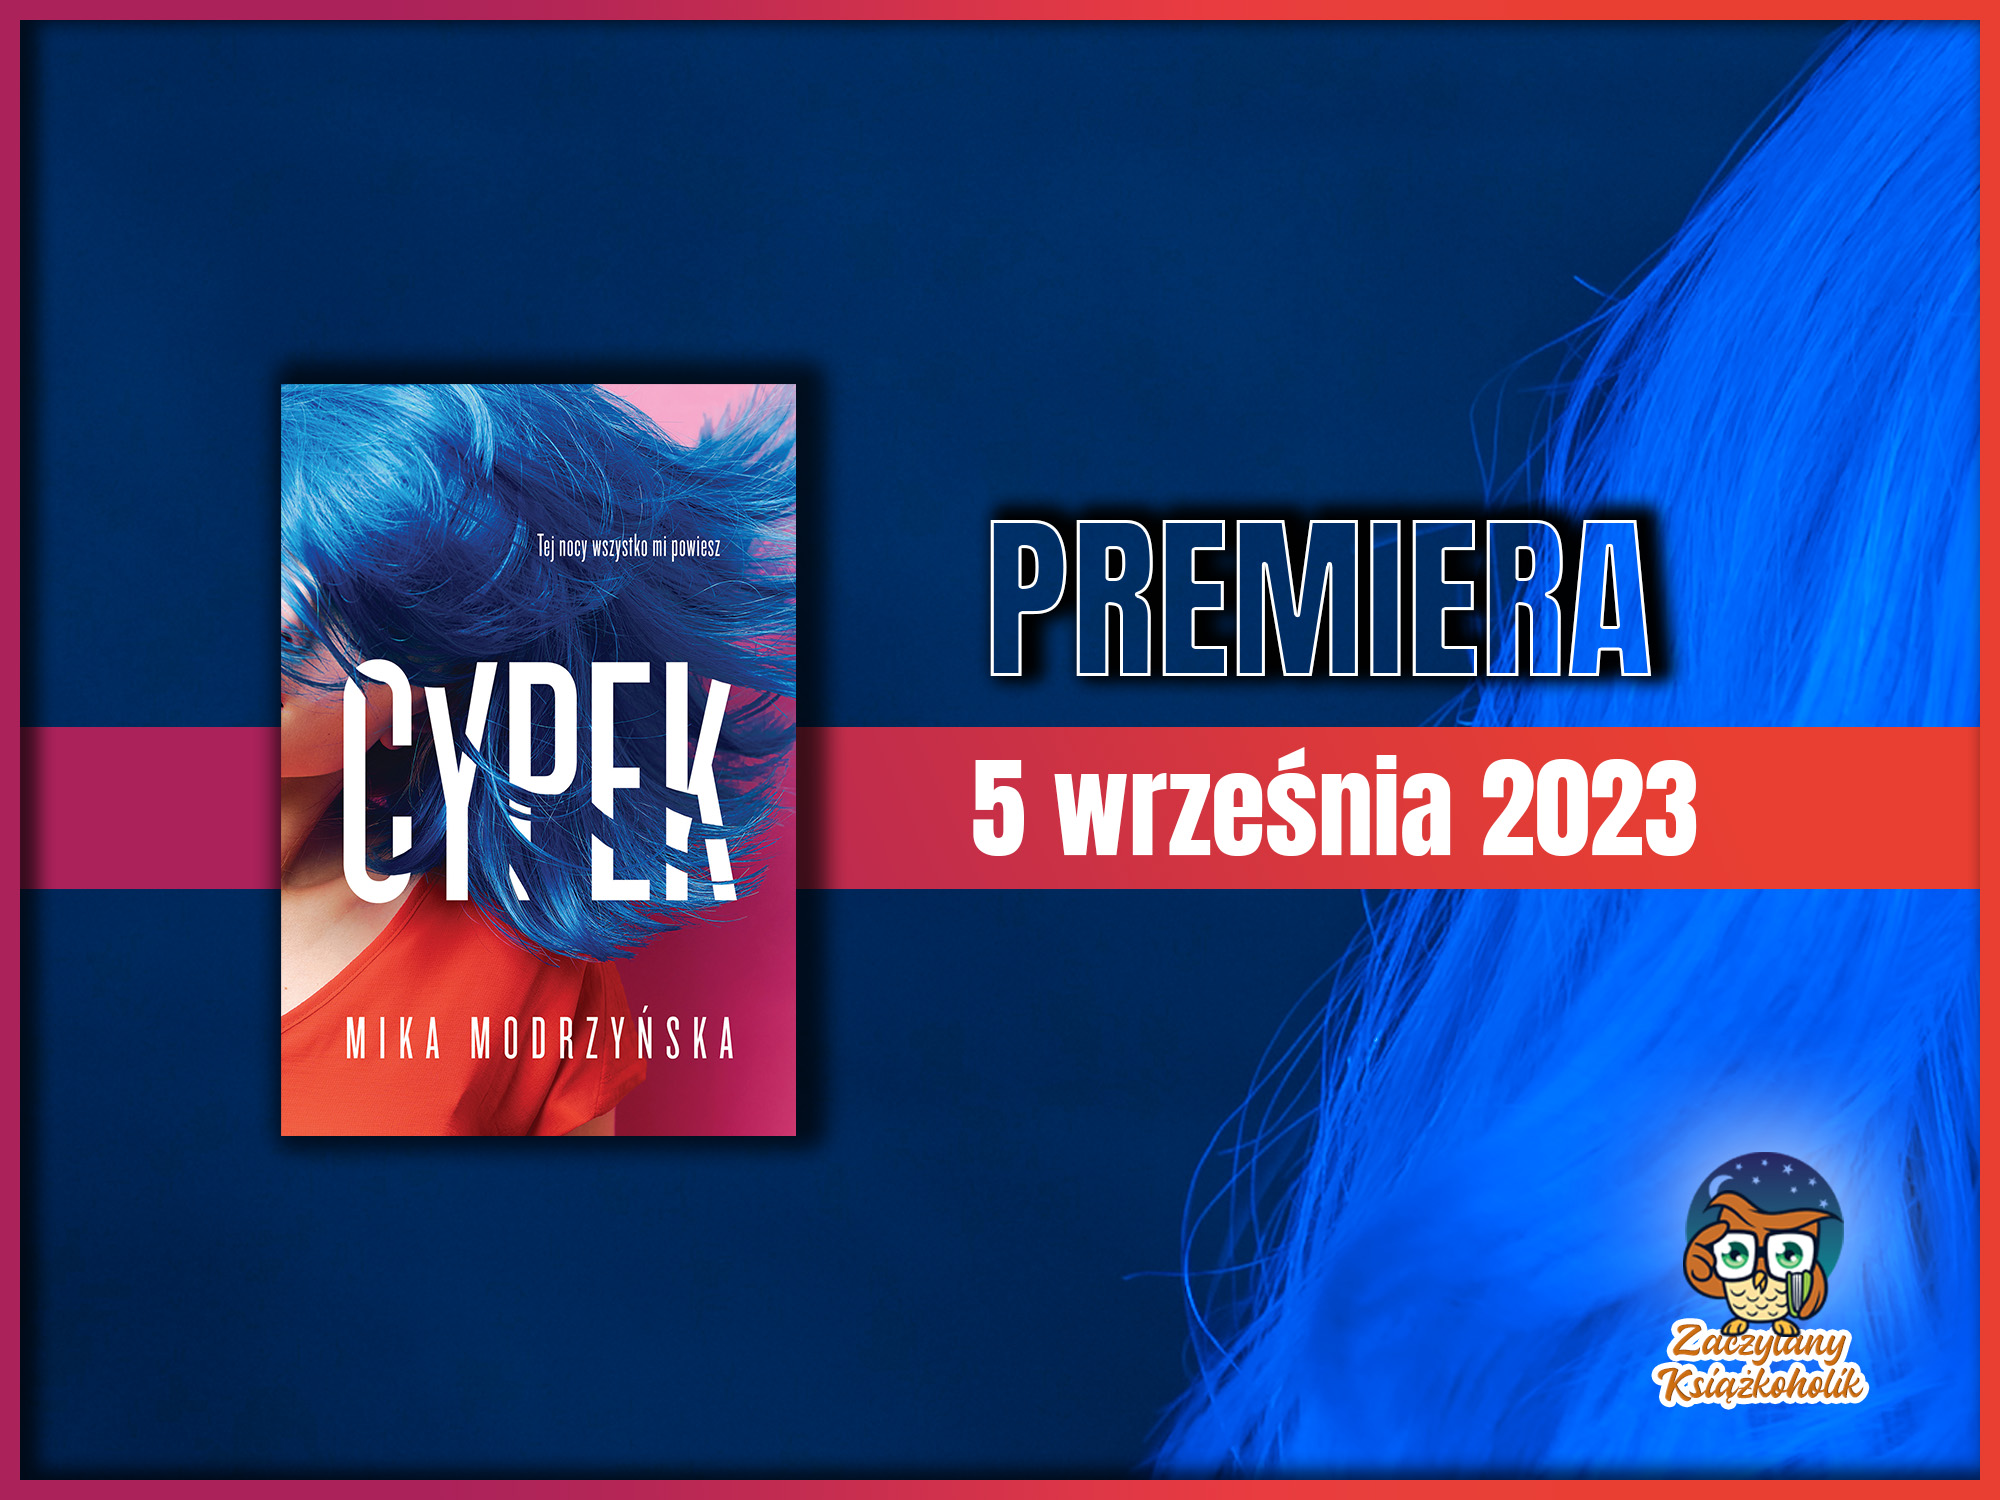 Cypek - Mika Modrzyńska - zaczytanyksiazkoholik.pl